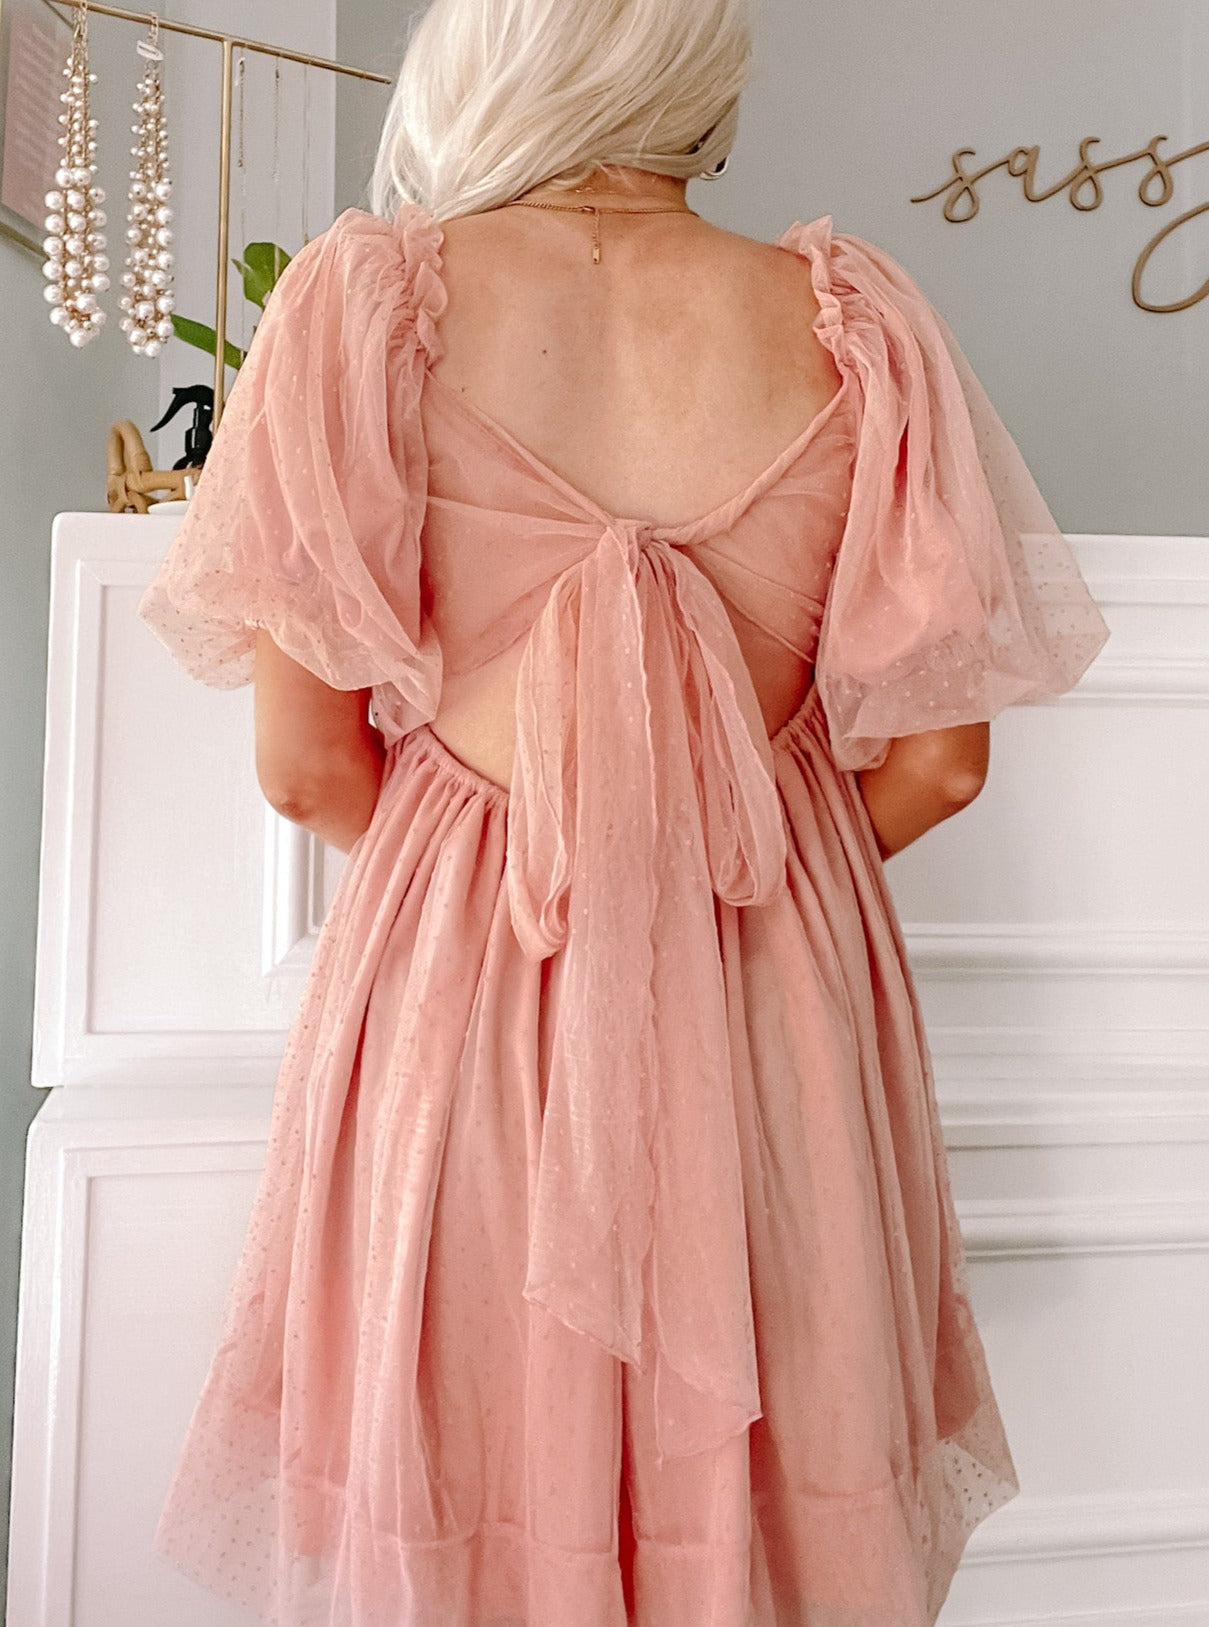 Princess Blush Dress | sassyshortcake.com